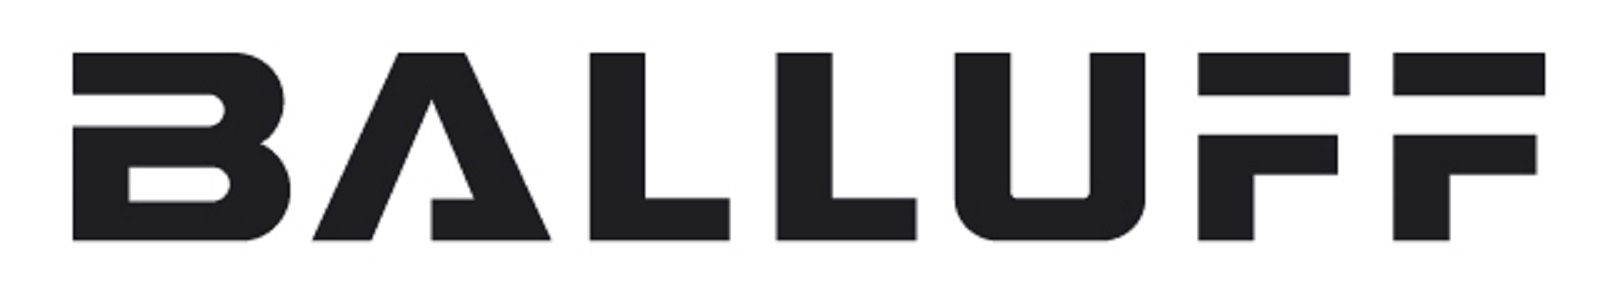 BALLUFF LTD Logo